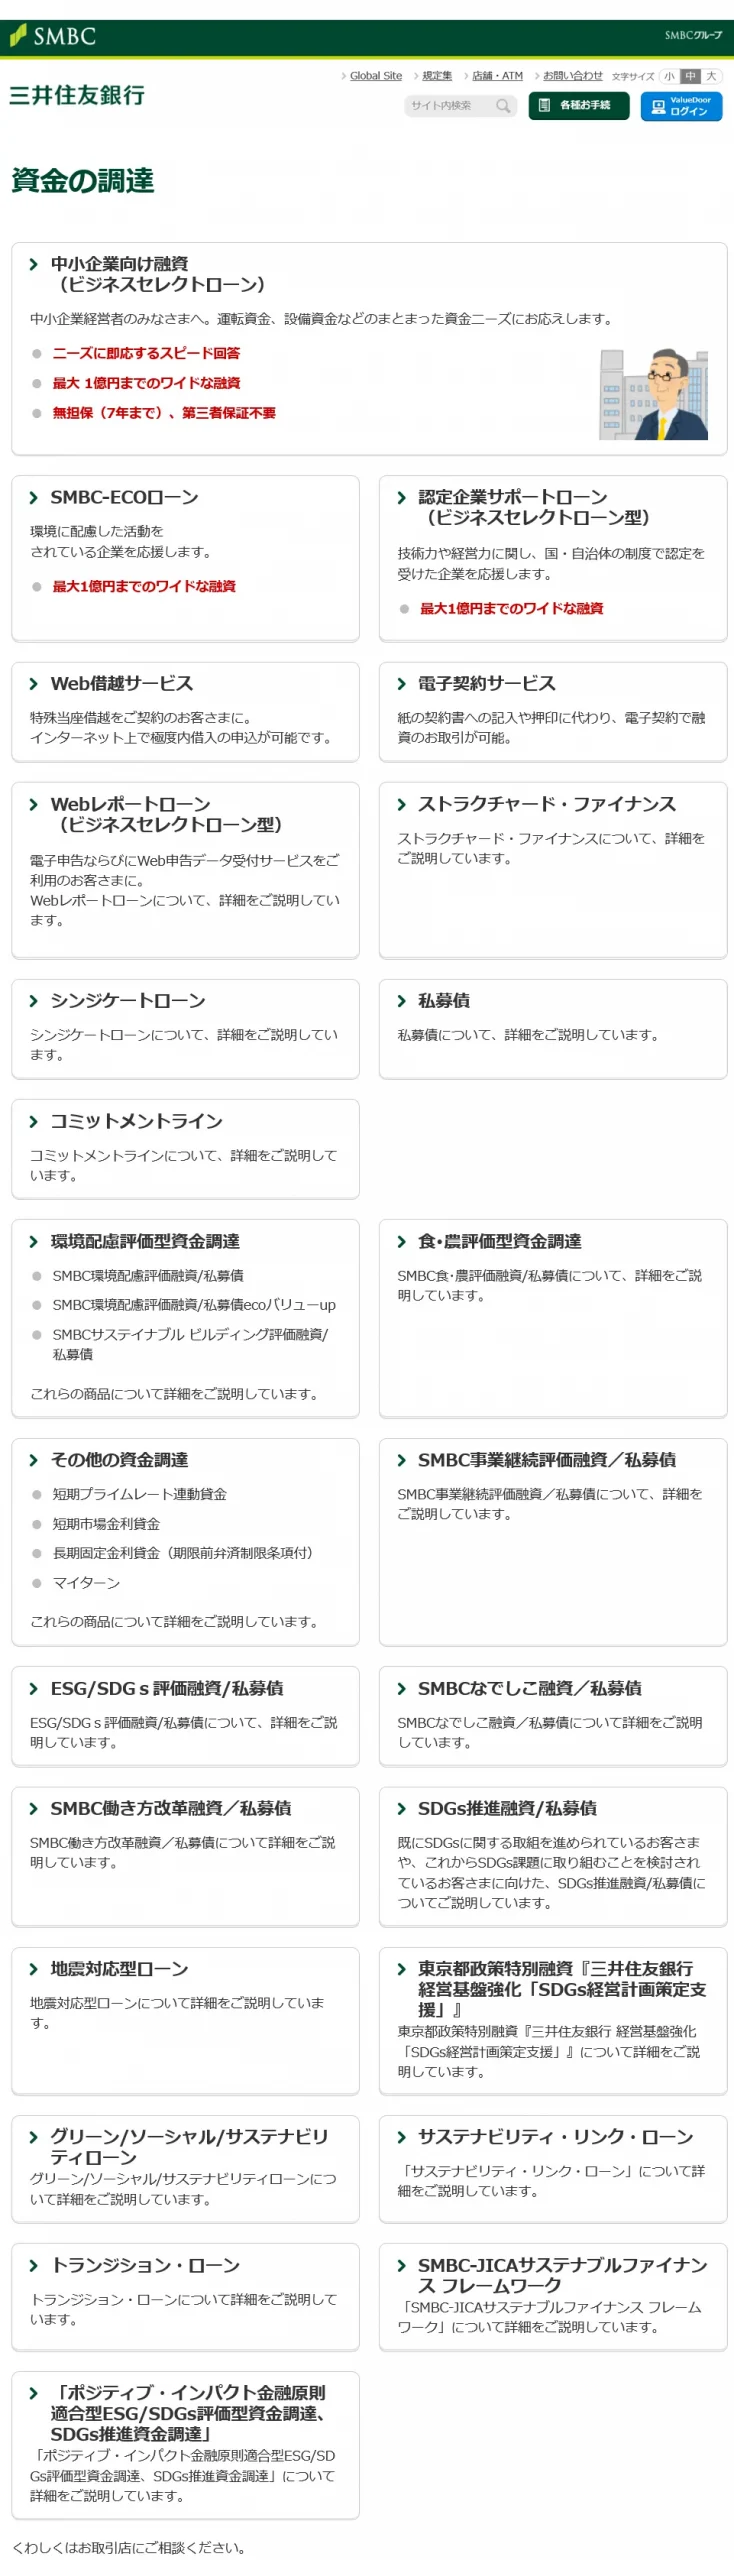 三井住友銀行による新しいビジネスローンサービスの種類一覧